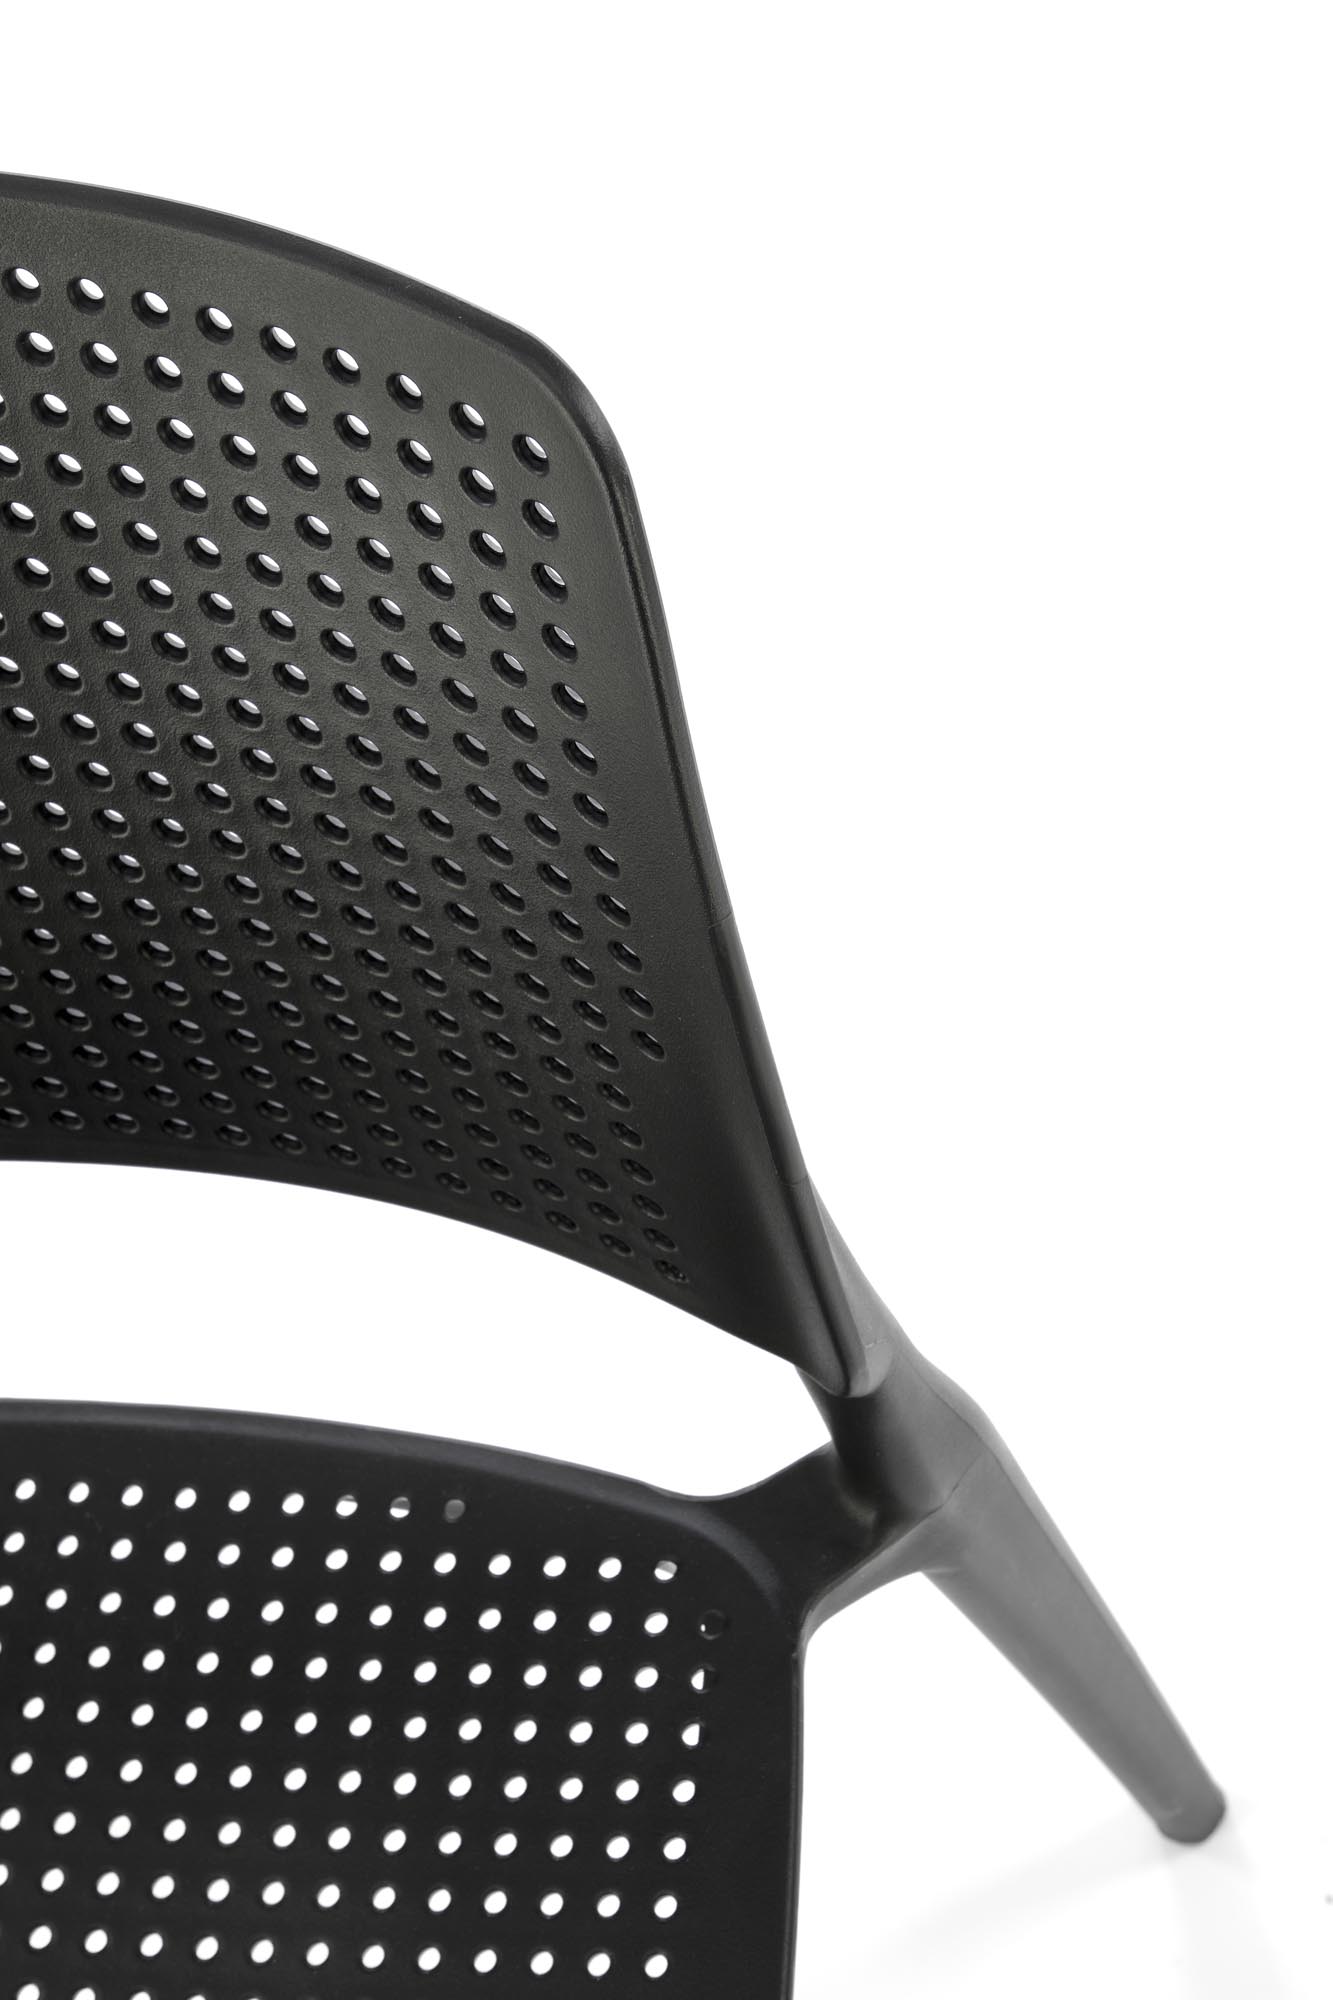 K514 Židle Černý (1p=4szt) židle z tworzywa k514 - Černý